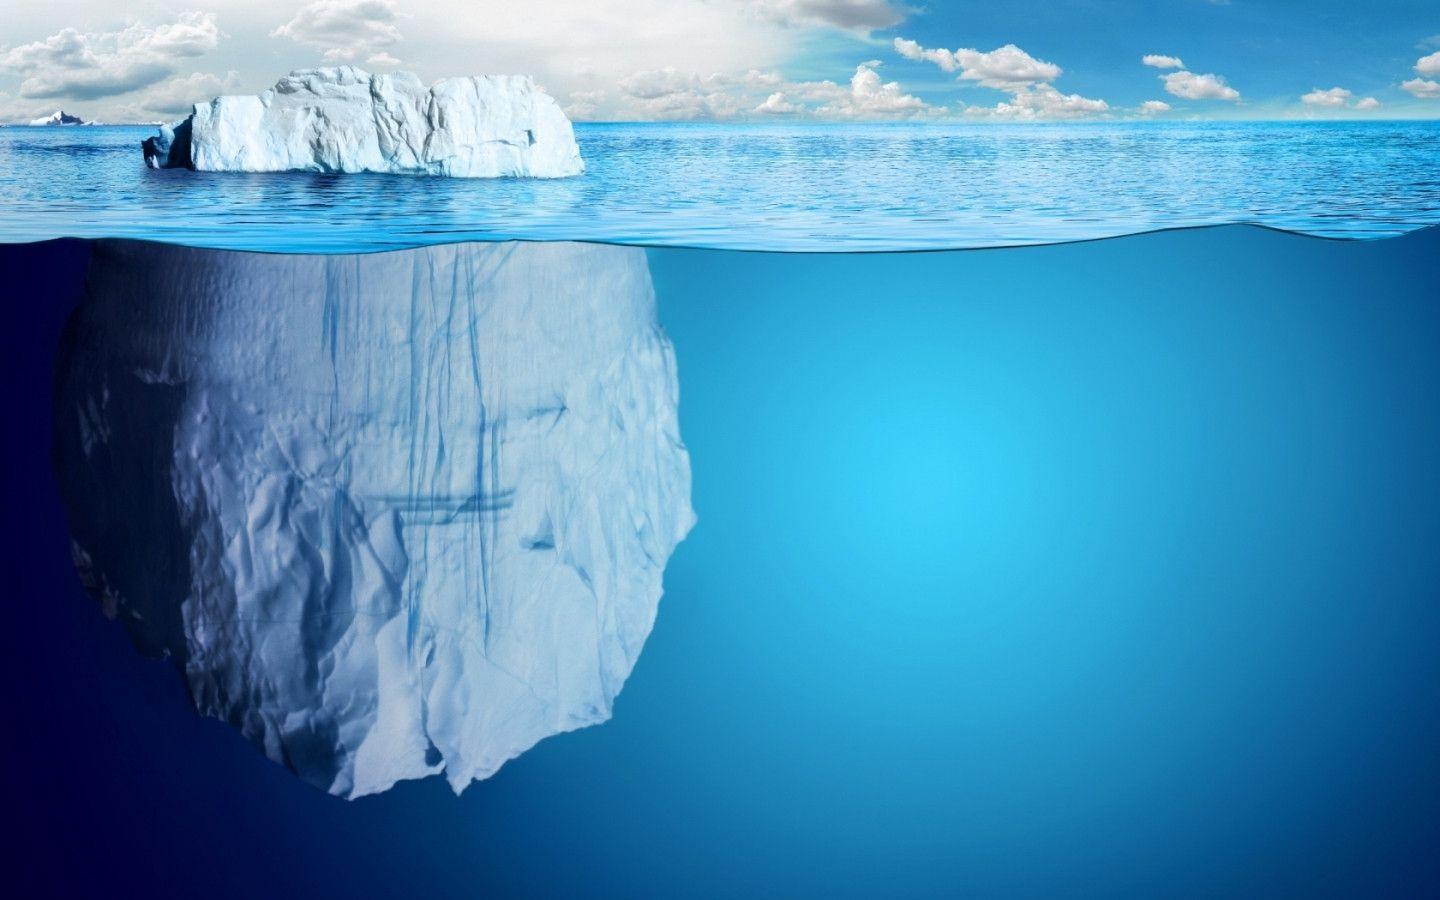 Wallpaper Iceberg